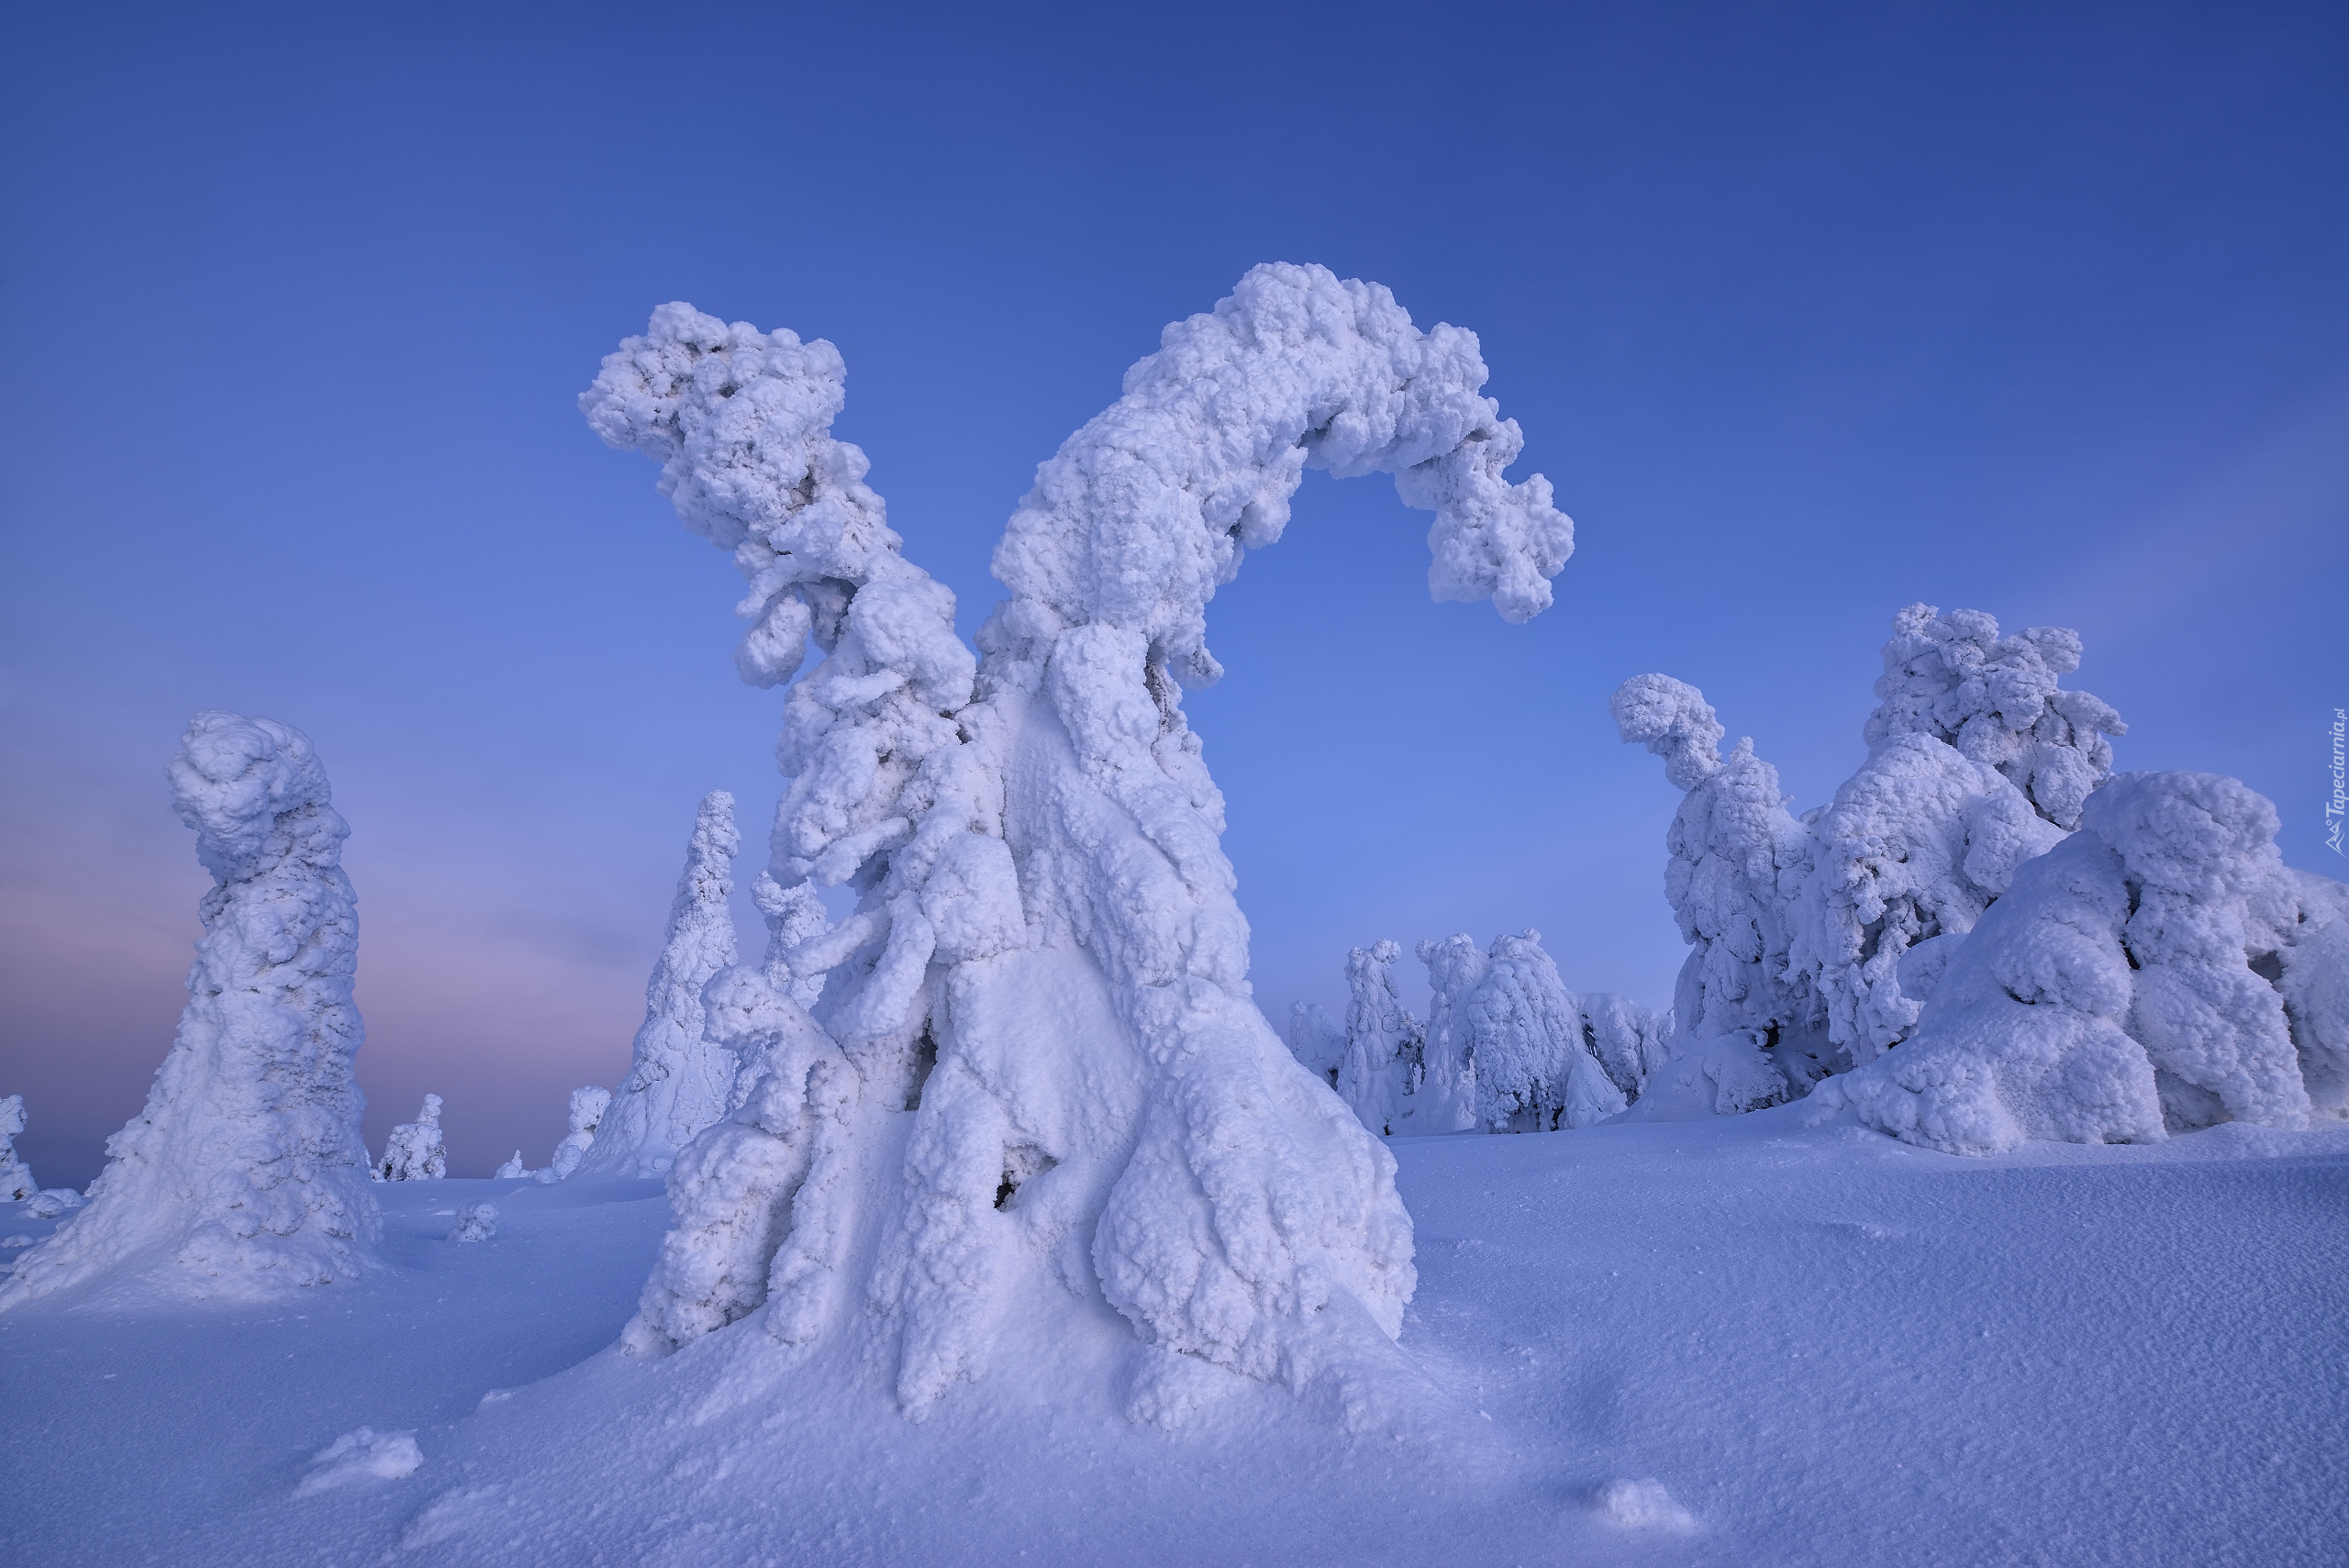 Zima, Śnieg, Drzewa, Ośnieżone, Rezerwat Valtavaara, Laponia, Finlandia